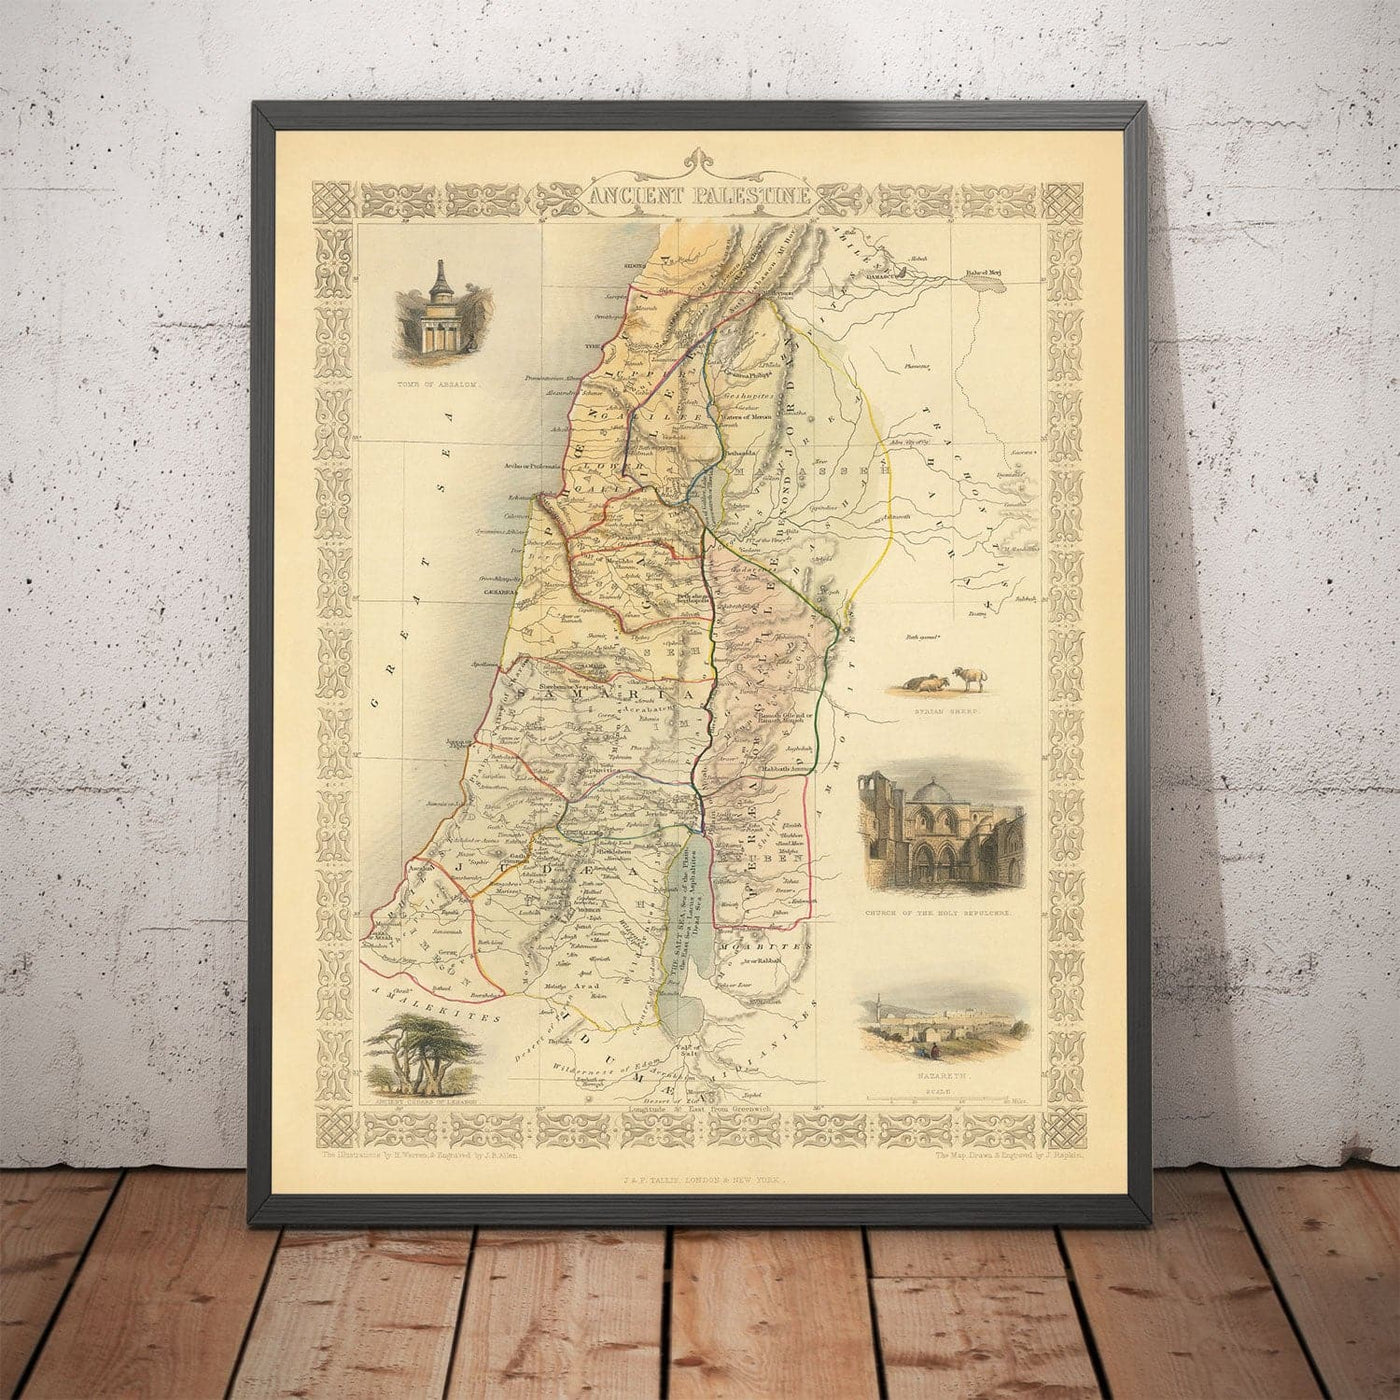 Alte Karte des alten Palästinas im Jahr 1851 - Heiliges Land, Kanaan, Jerusalem, Judea, Samaria, Galiläa, Israel, West-Bank, Gaza